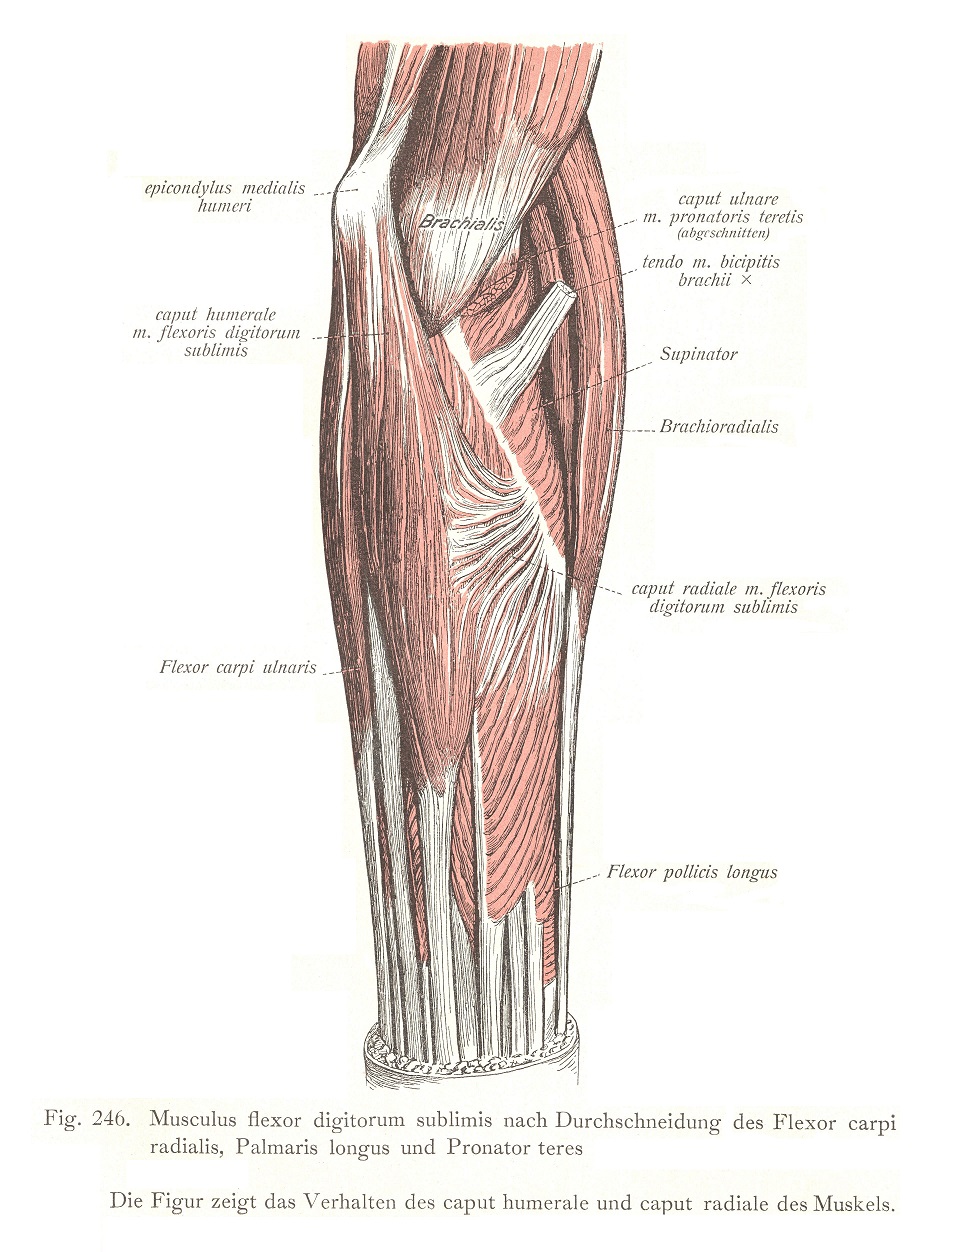 Musculus flexor digitorum sublimis после рассечения лучевого сгибателя запястья, длинной ладонной мышцы и круглого пронатора. На рисунке показано поведение плечевой и лучевой головок мышцы